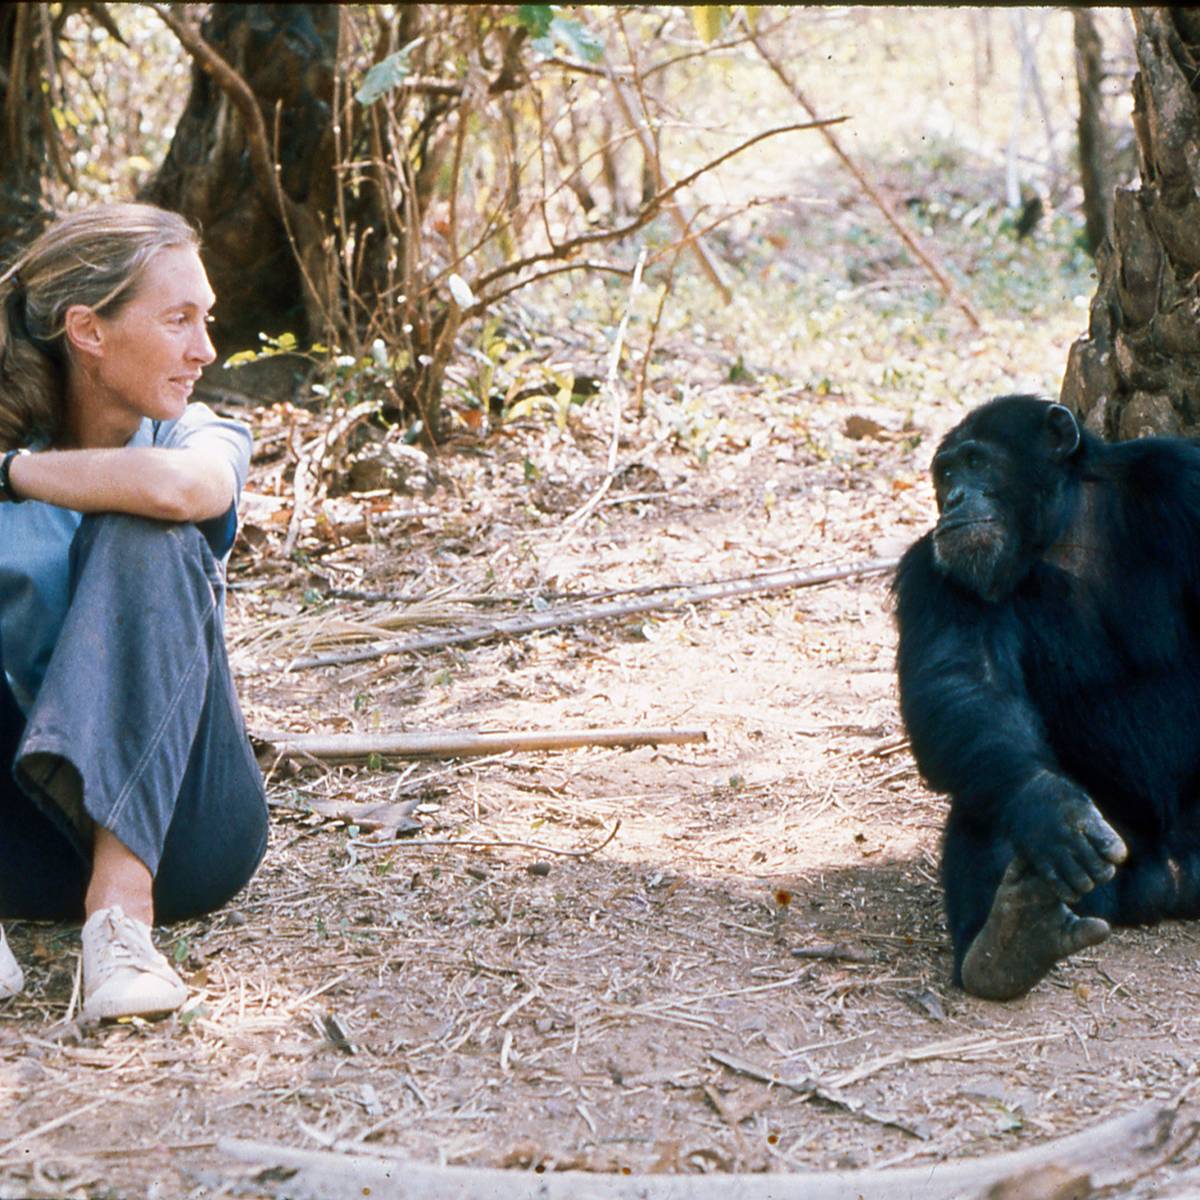 Regard avec un chimpanzé - Recueillir, réhabiliter et réintroduire les chimpanzés, mandrills et cercopithèques - Programme Congo - Association Beauval Nature